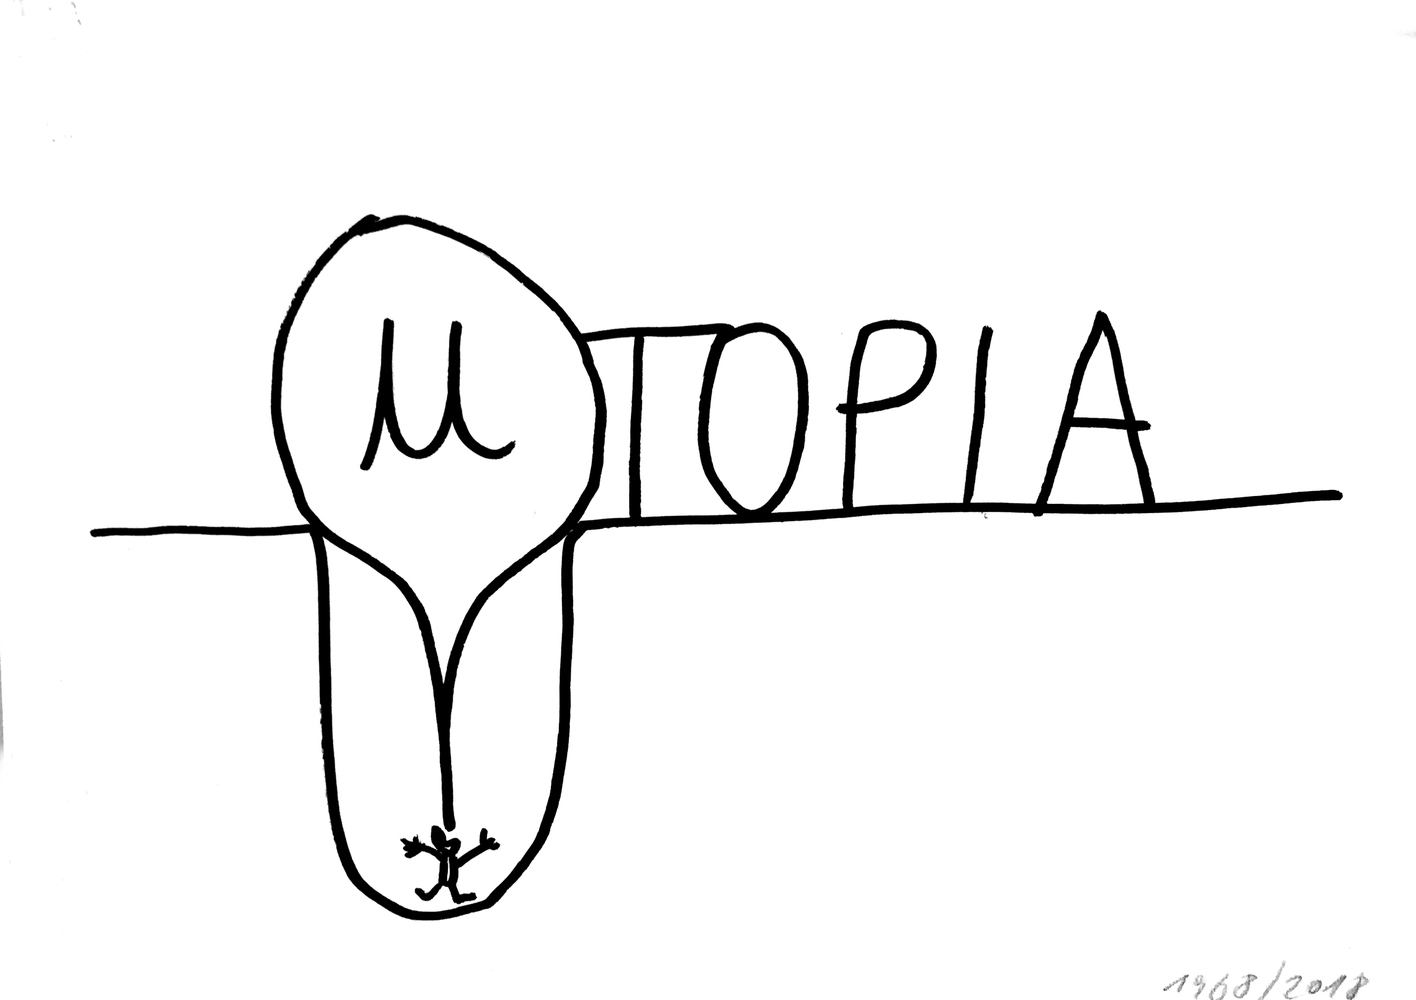 Utopia, Dan Perjovschi